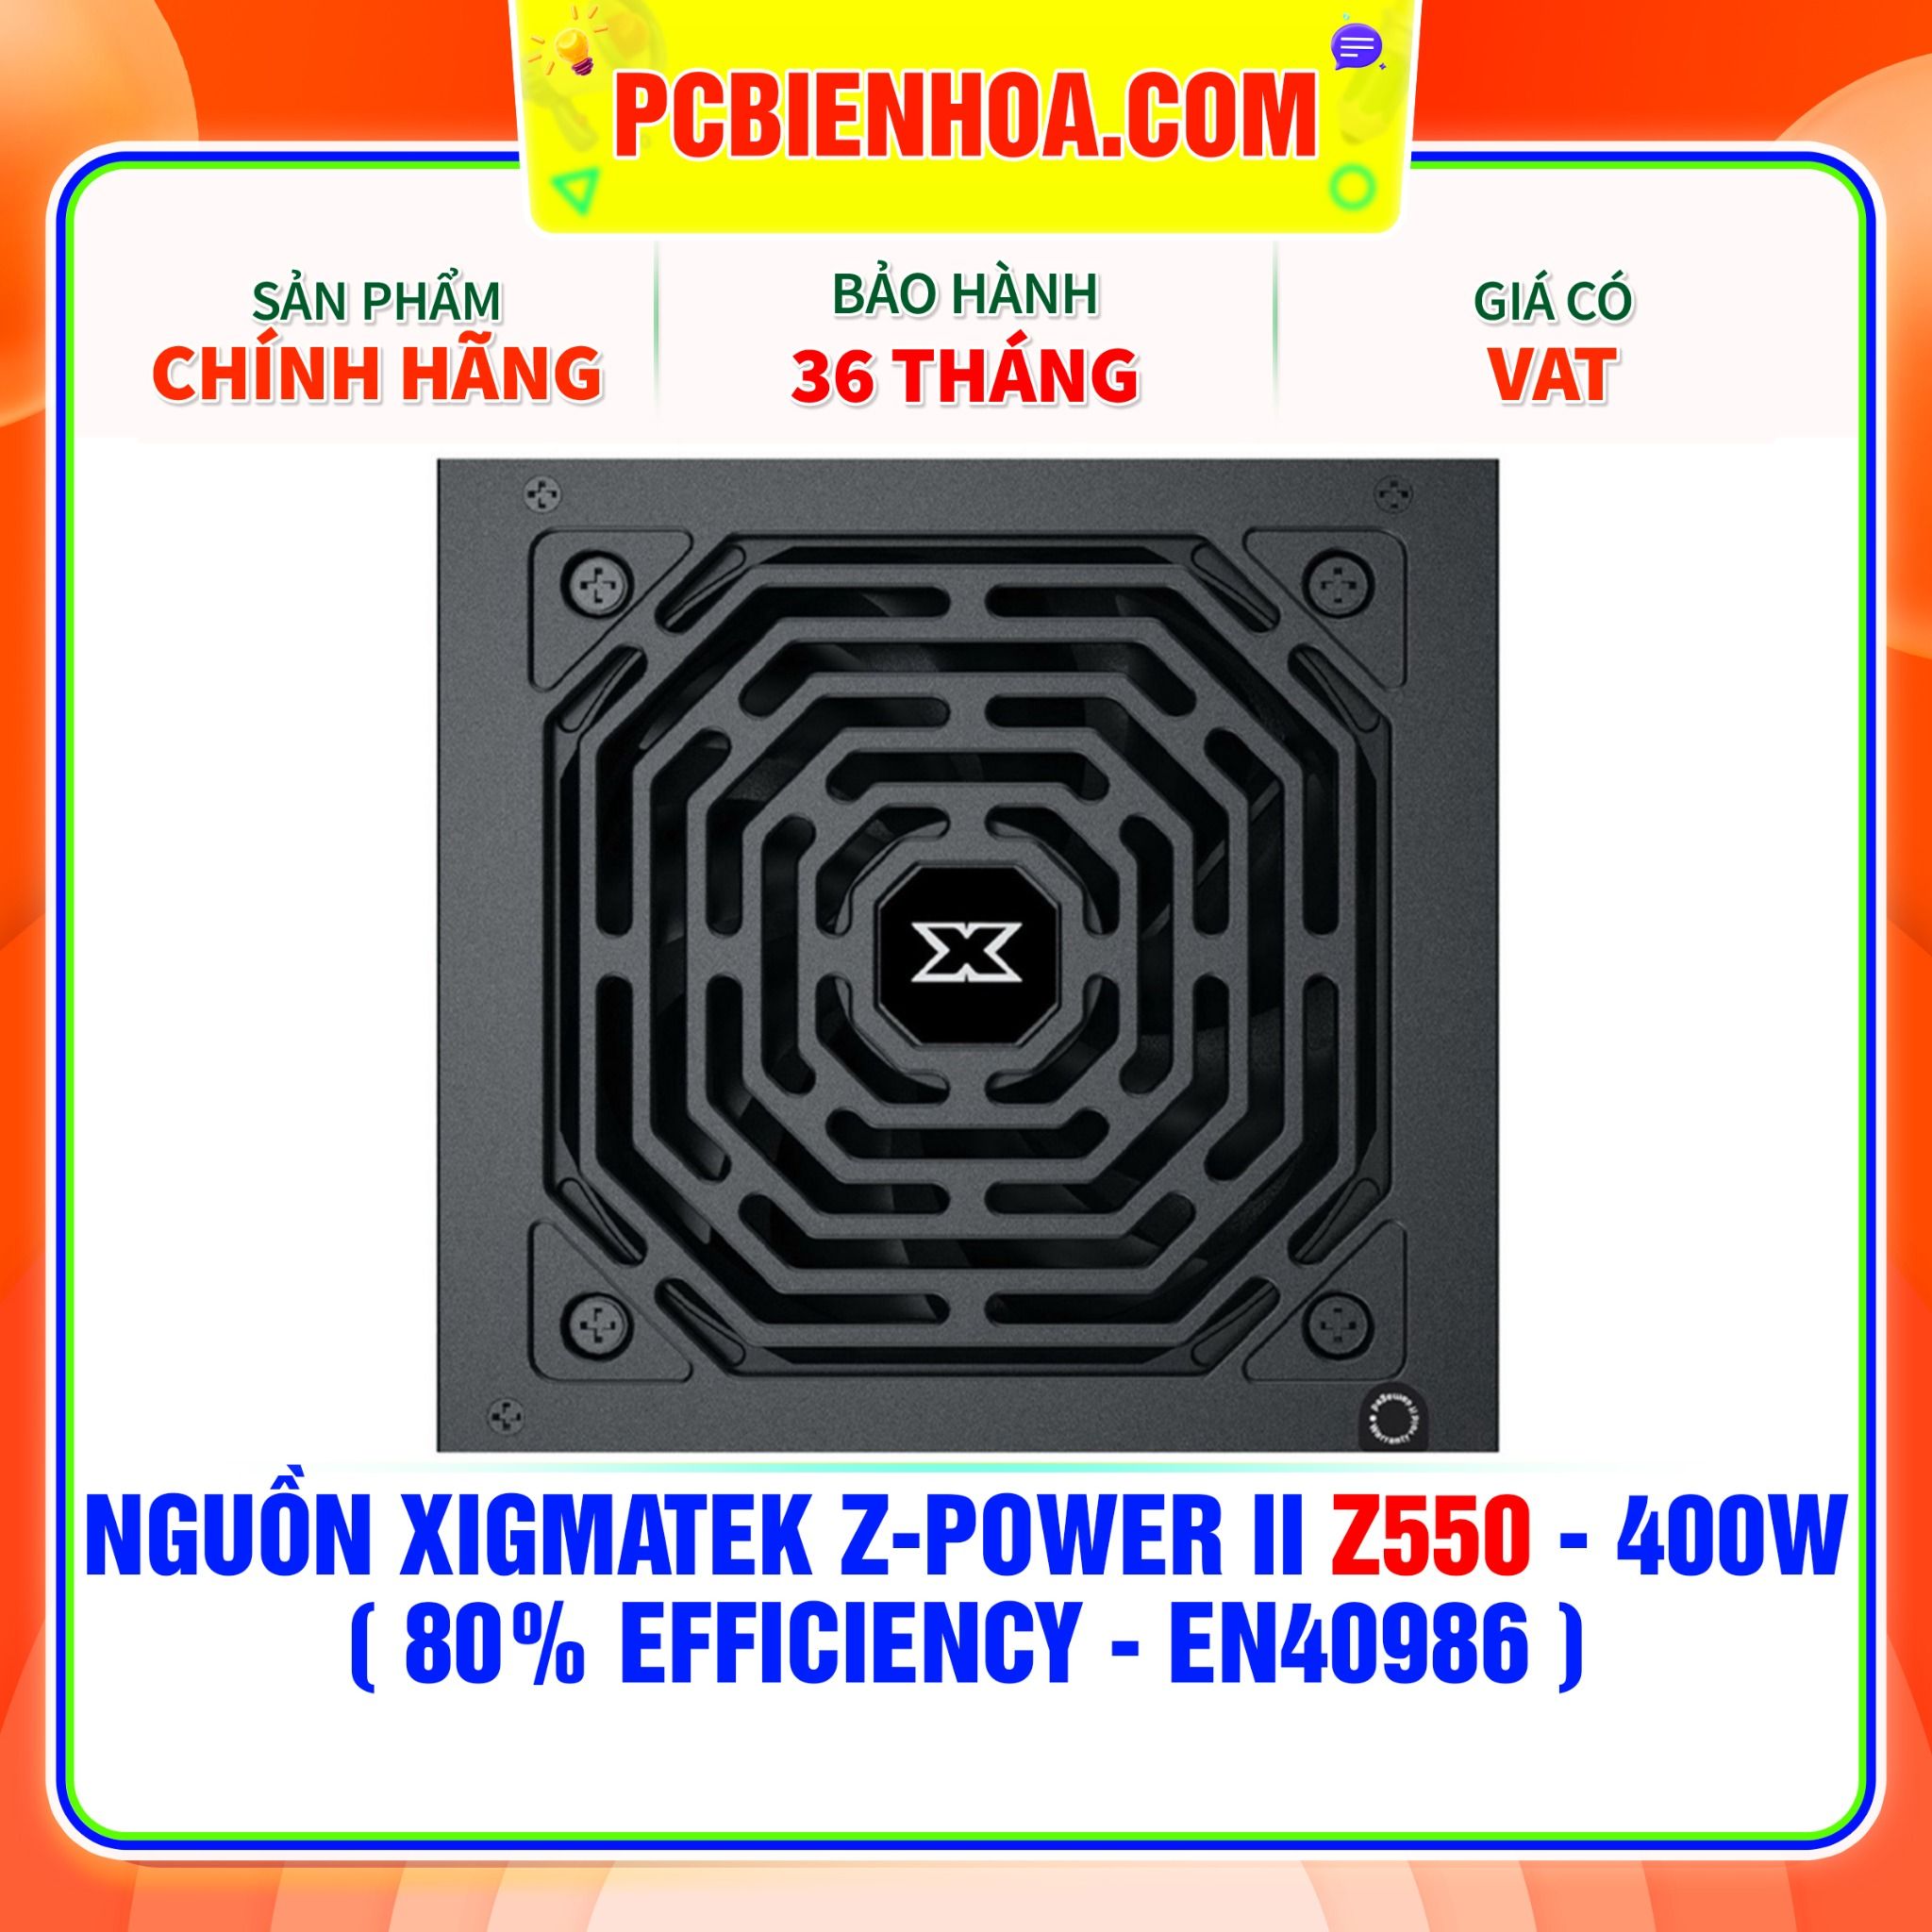  NGUỒN XIGMATEK Z-POWER II Z550 - 400W ( 80% EFFICIENCY - EN40986 ) 